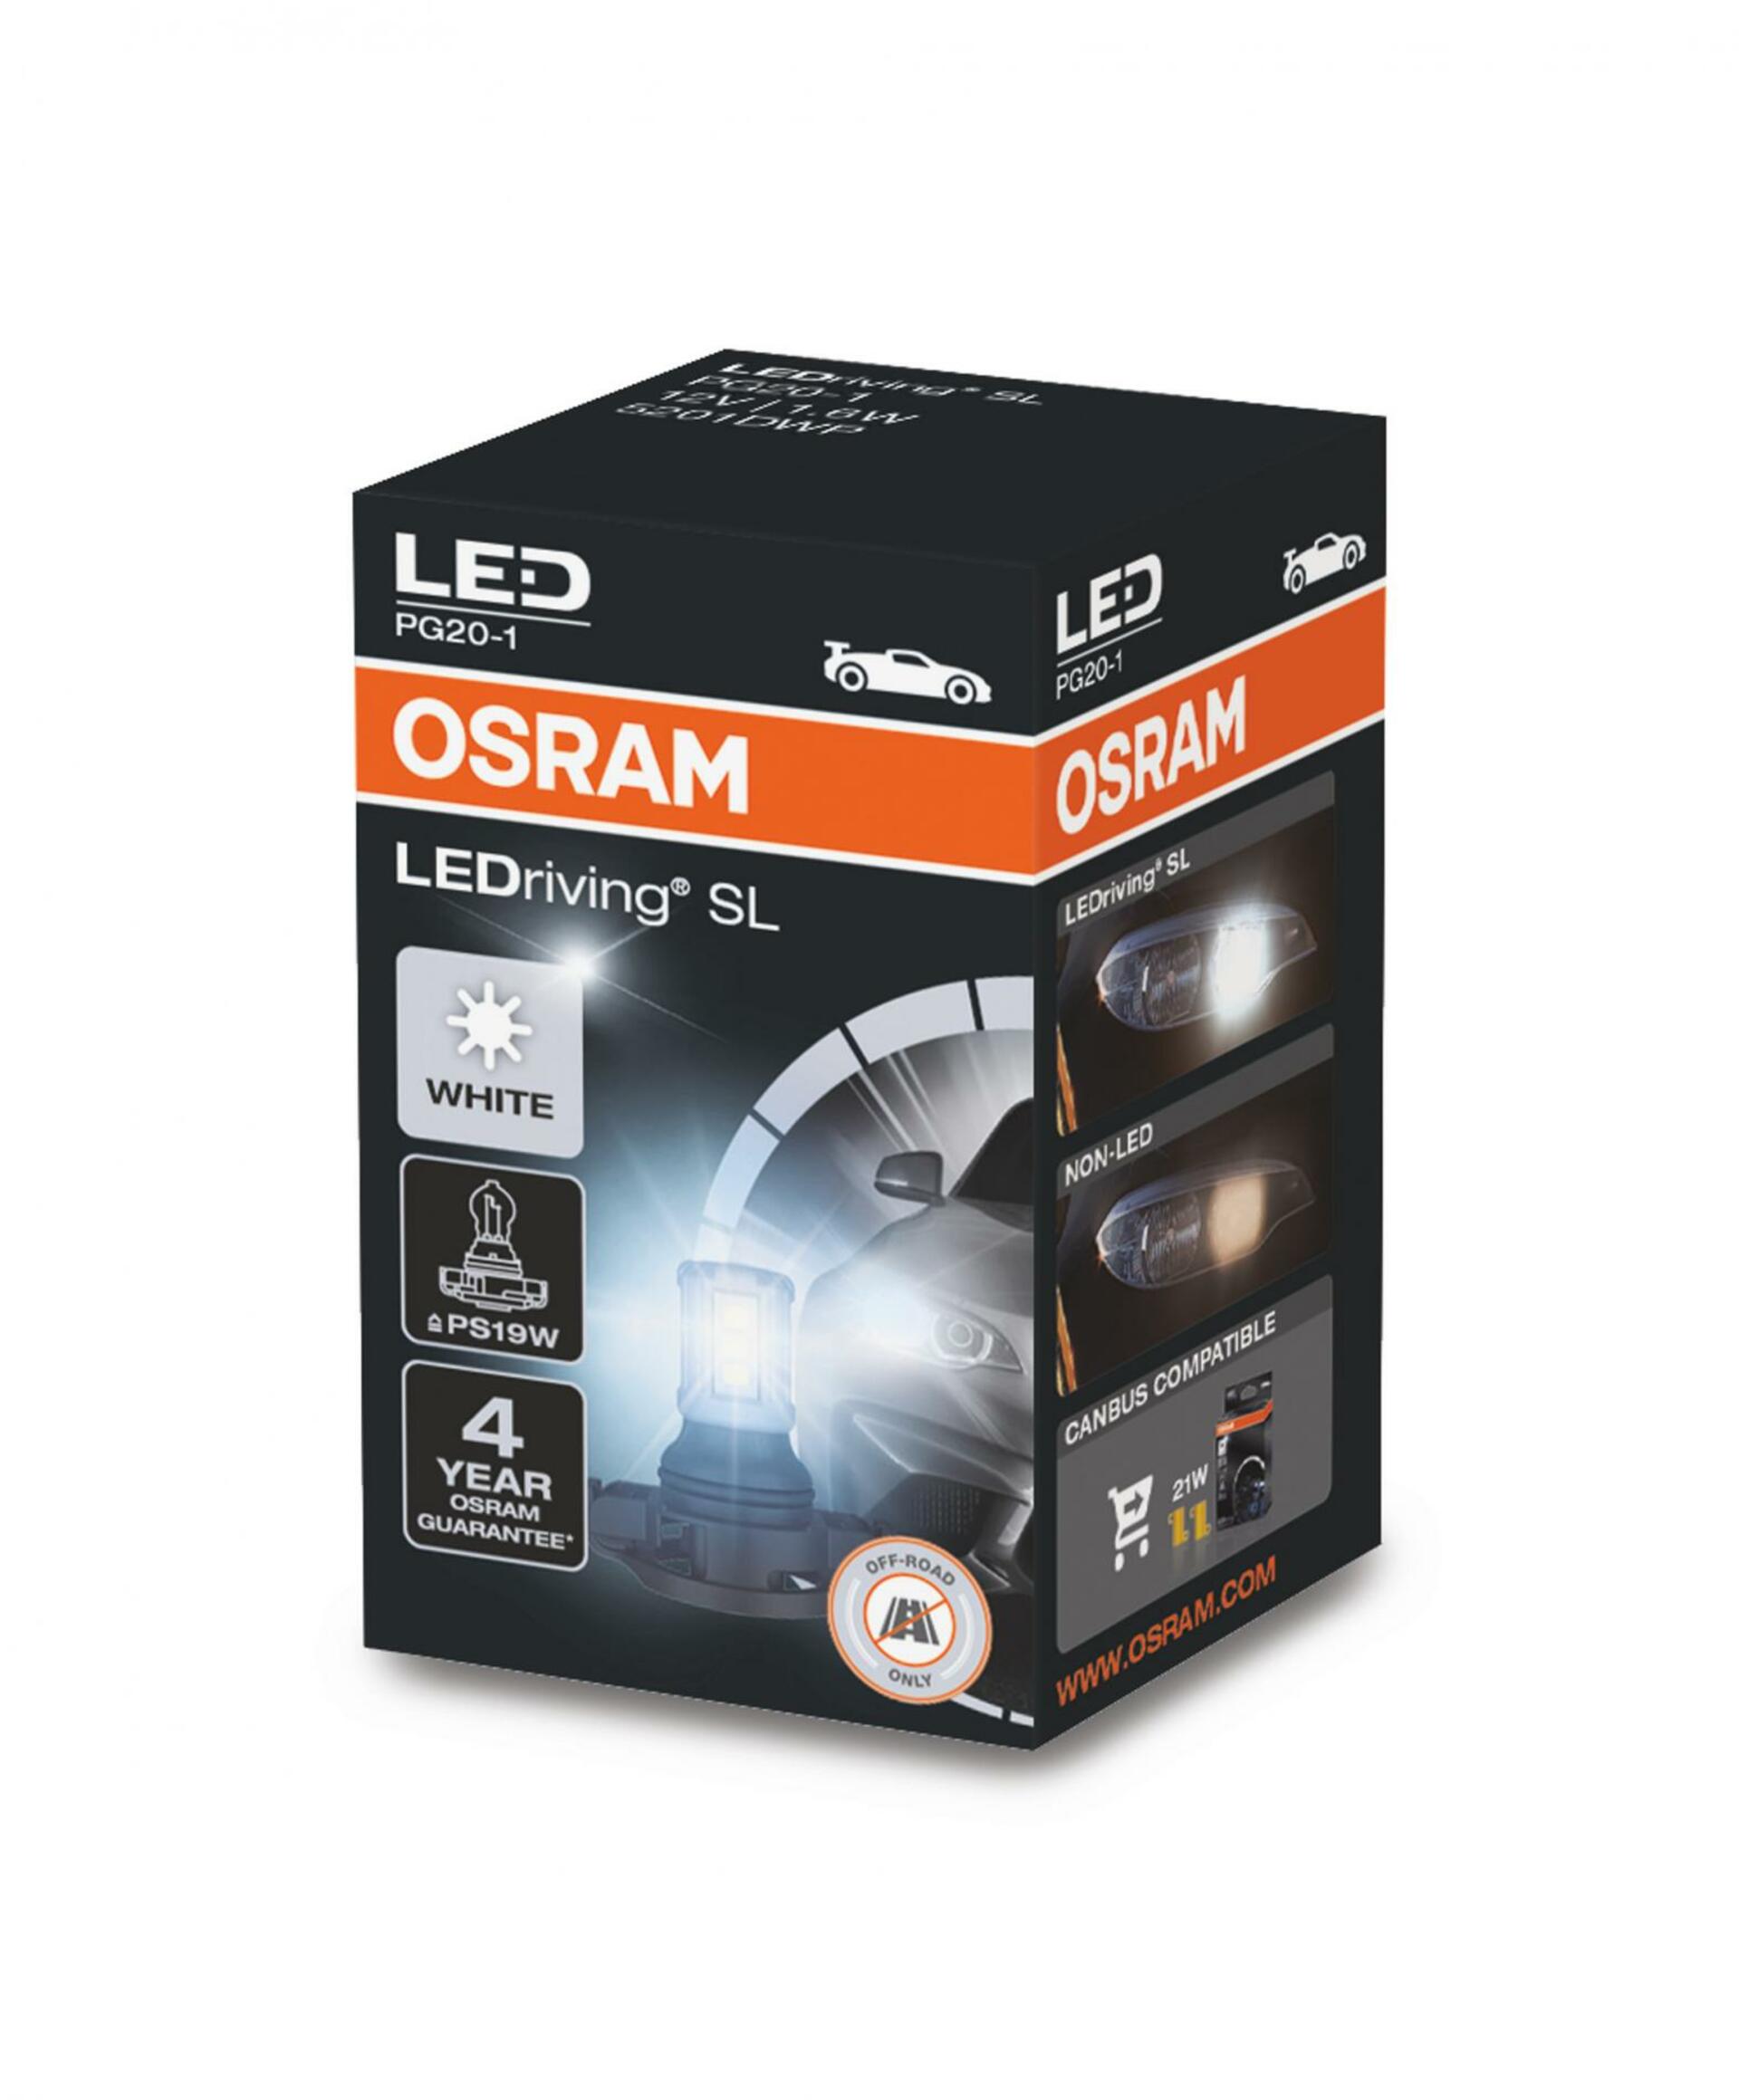 OSRAM LED PS19W 12V 1,8W PG20-1 Retrofit LED Cool White 6000K 1ks 5201DWP